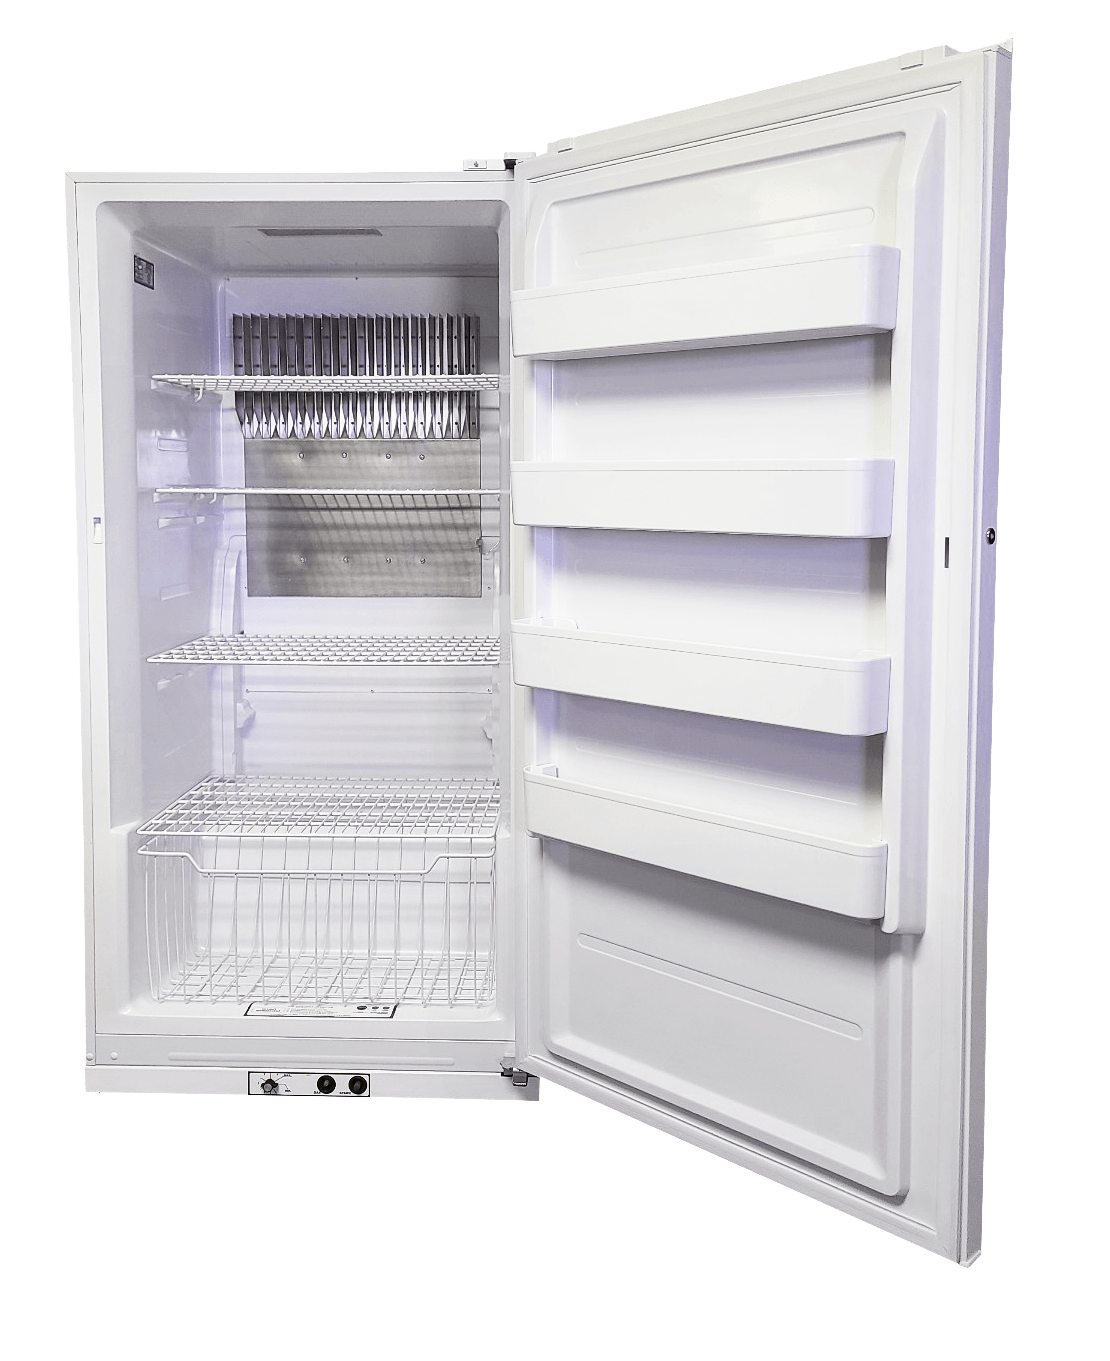 EZ Freeze Propane Refrigerator EZ Freeze EZ-18R 18 cu. ft. Propane All-Refrigerator (No Freezer Section) in White